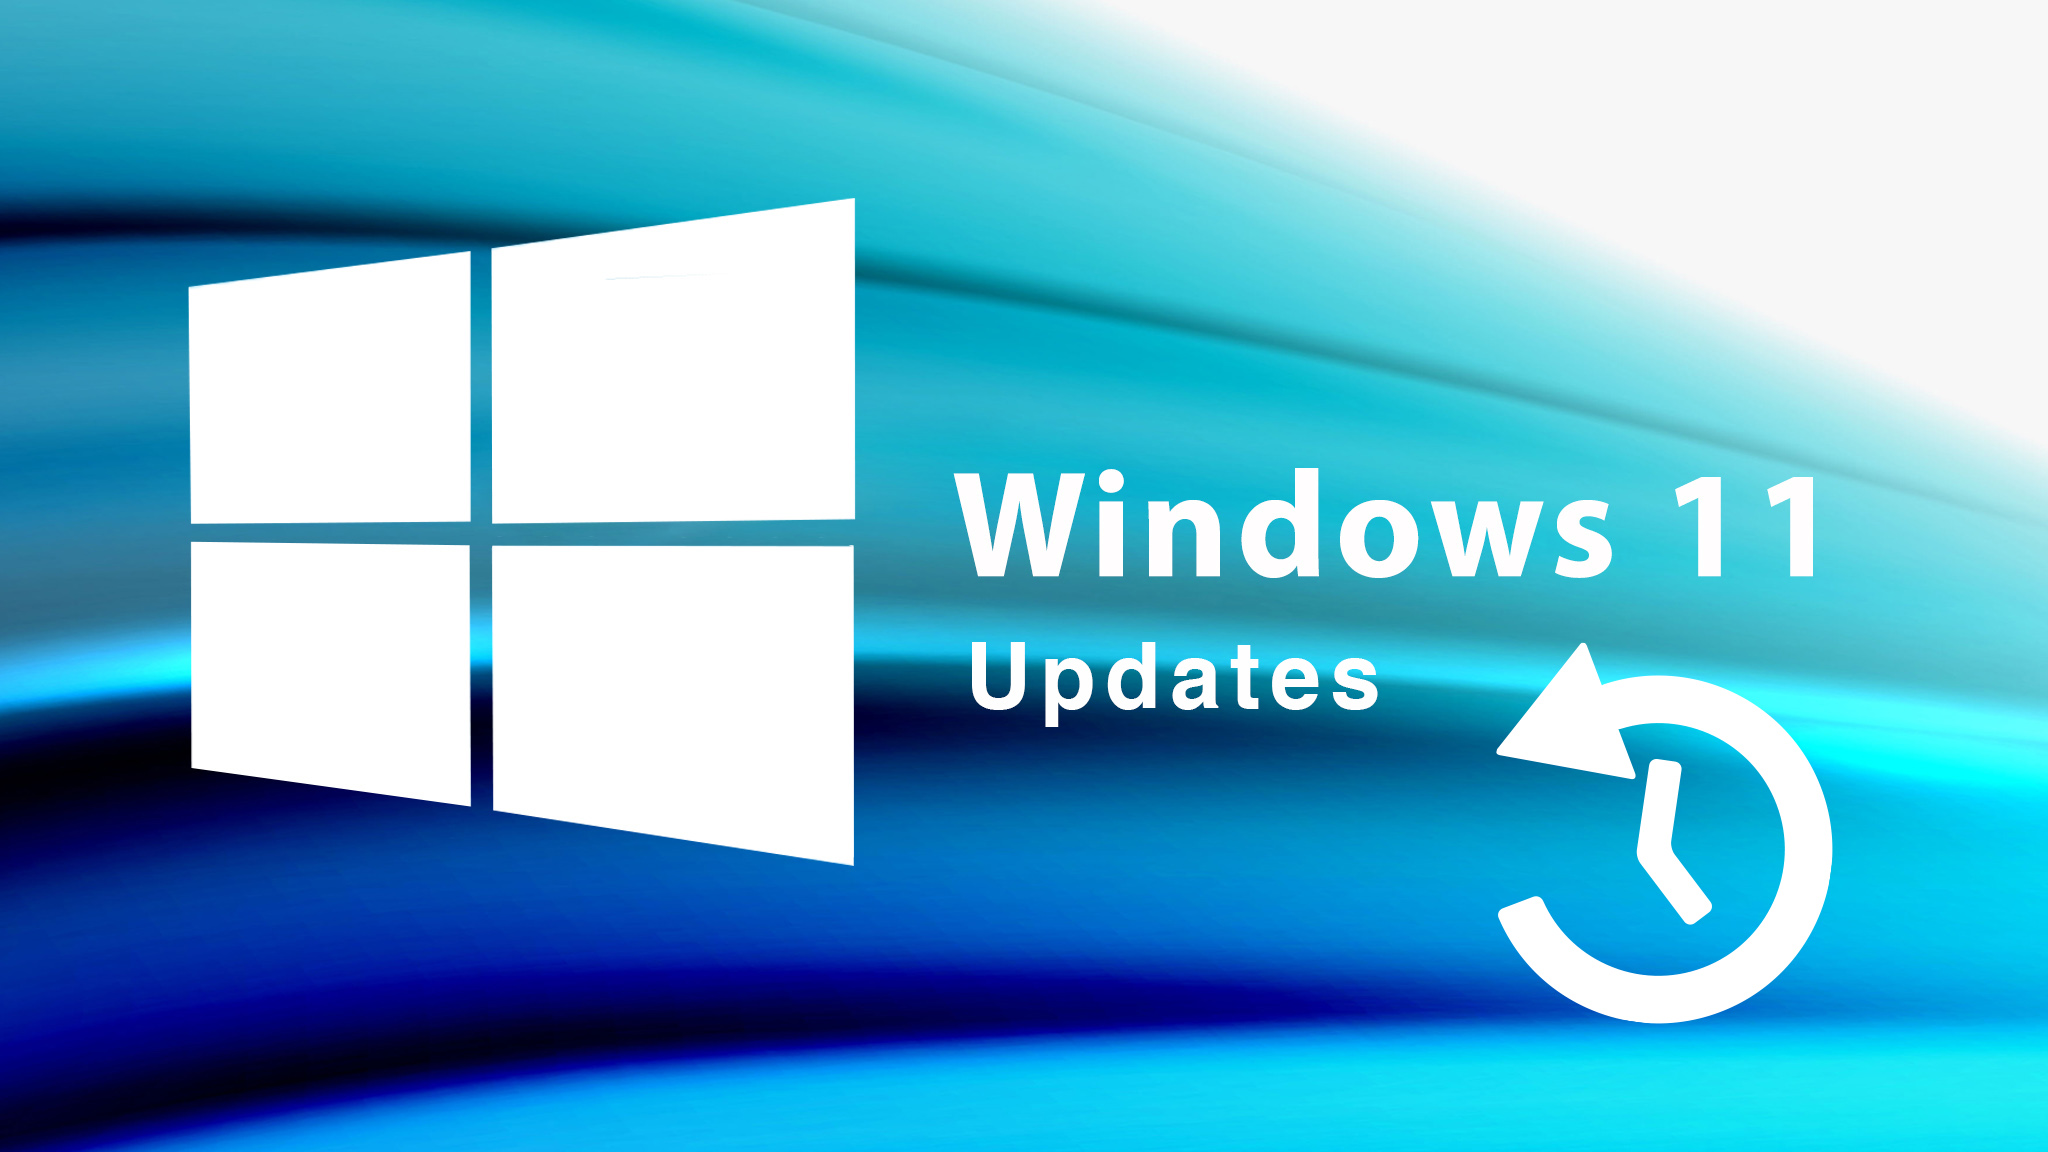 Windows 11: visualización del período de actualización en el menú Inicio